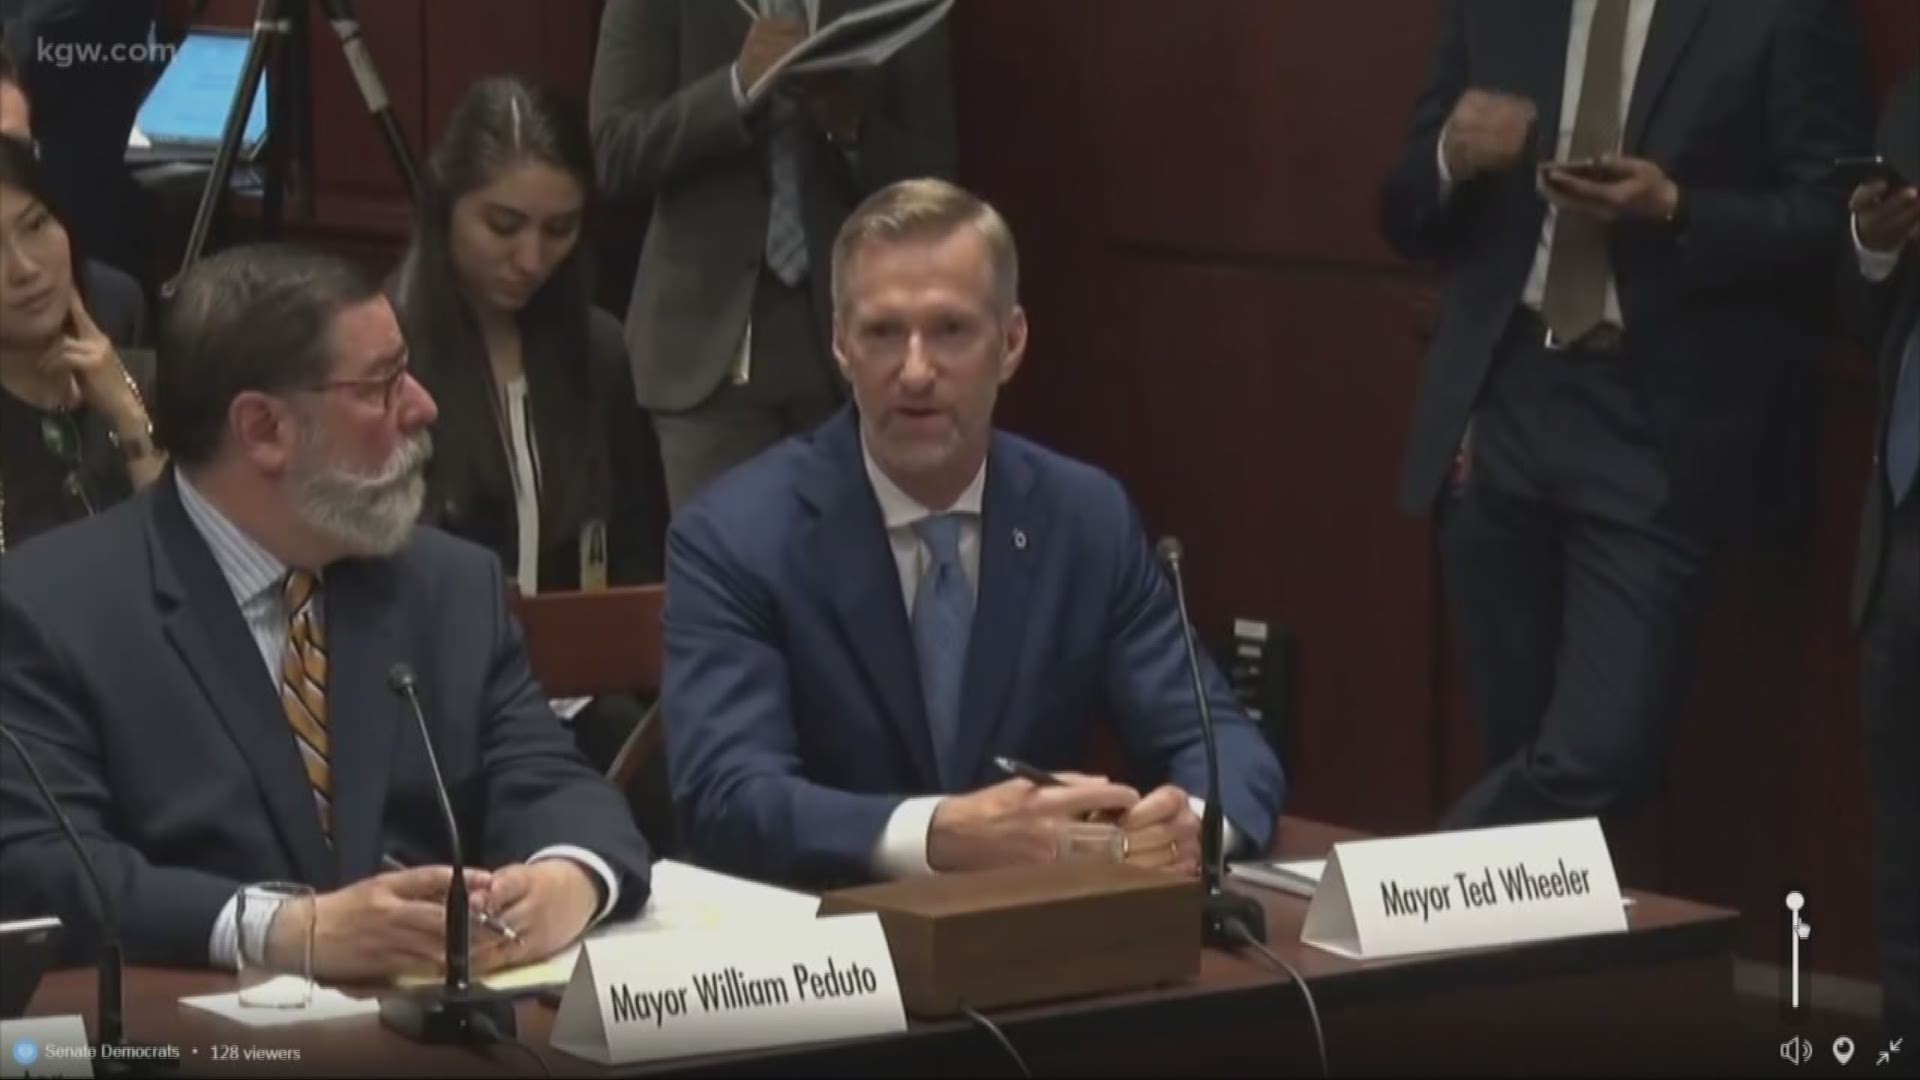 Mayor Ted Wheeler testifies on climate change before U.S. Senate committee